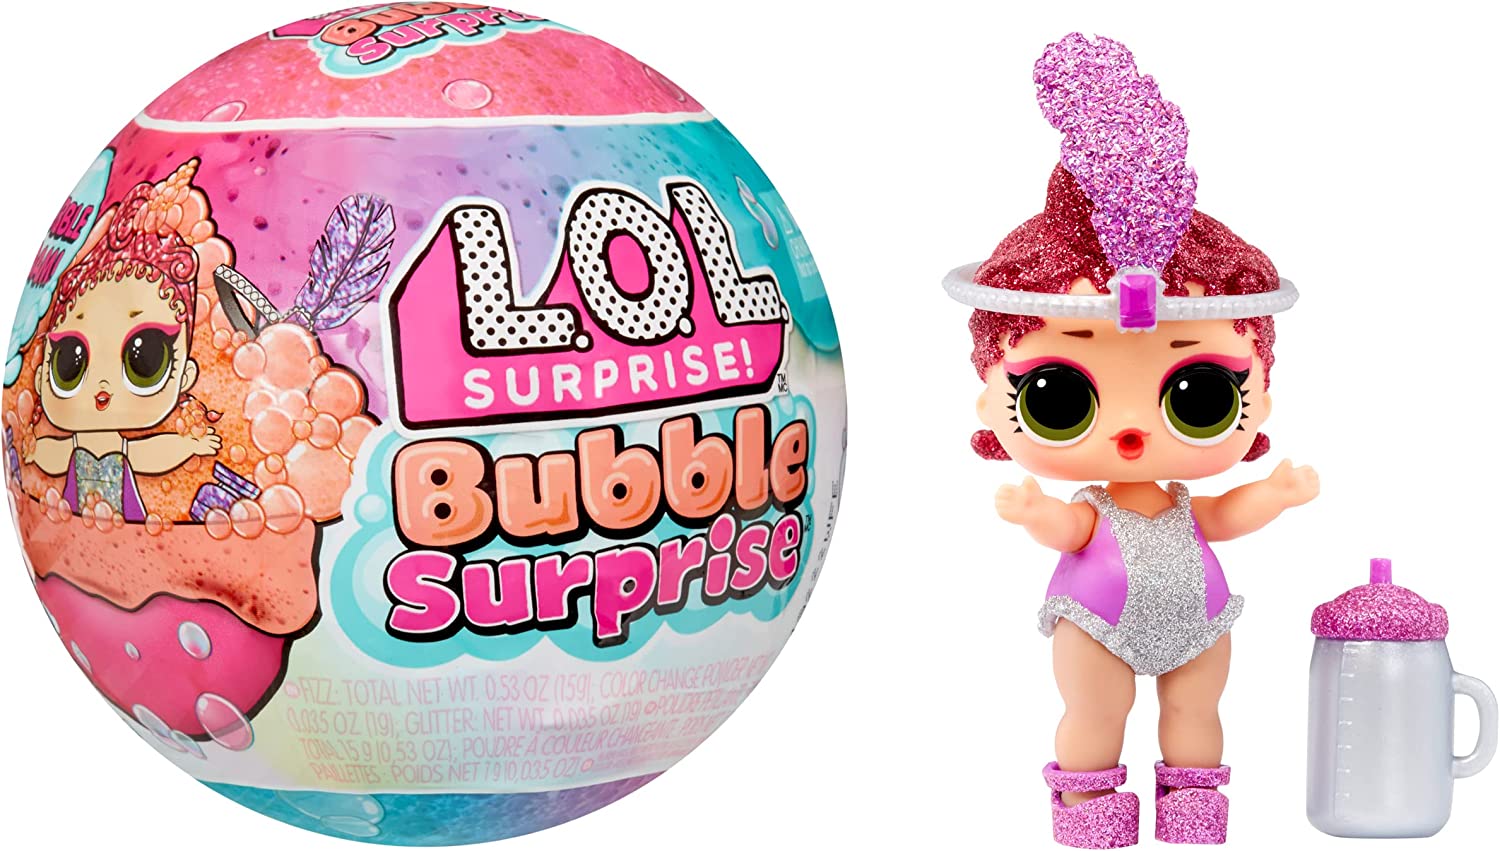 L.O.L. Surprise Bubble Surprise Doll 119807EU